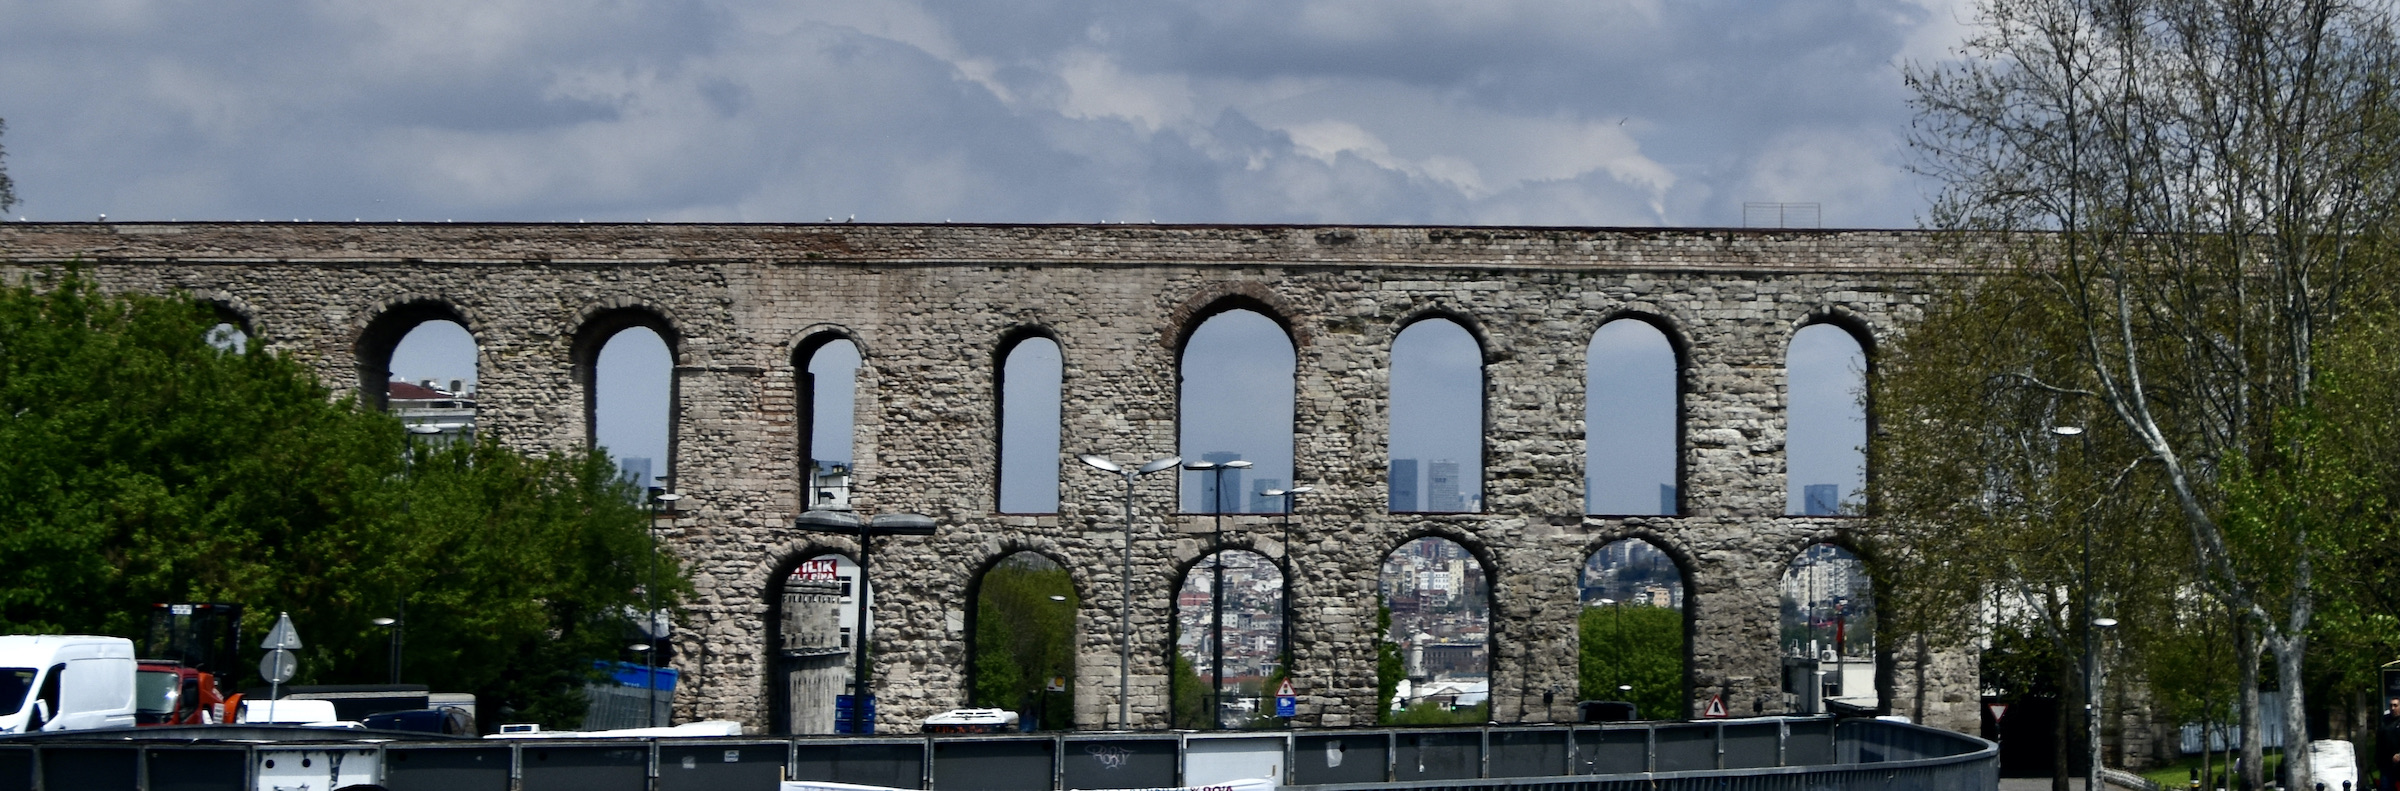 Aqueduct of Valens, unorthodox Istanbul